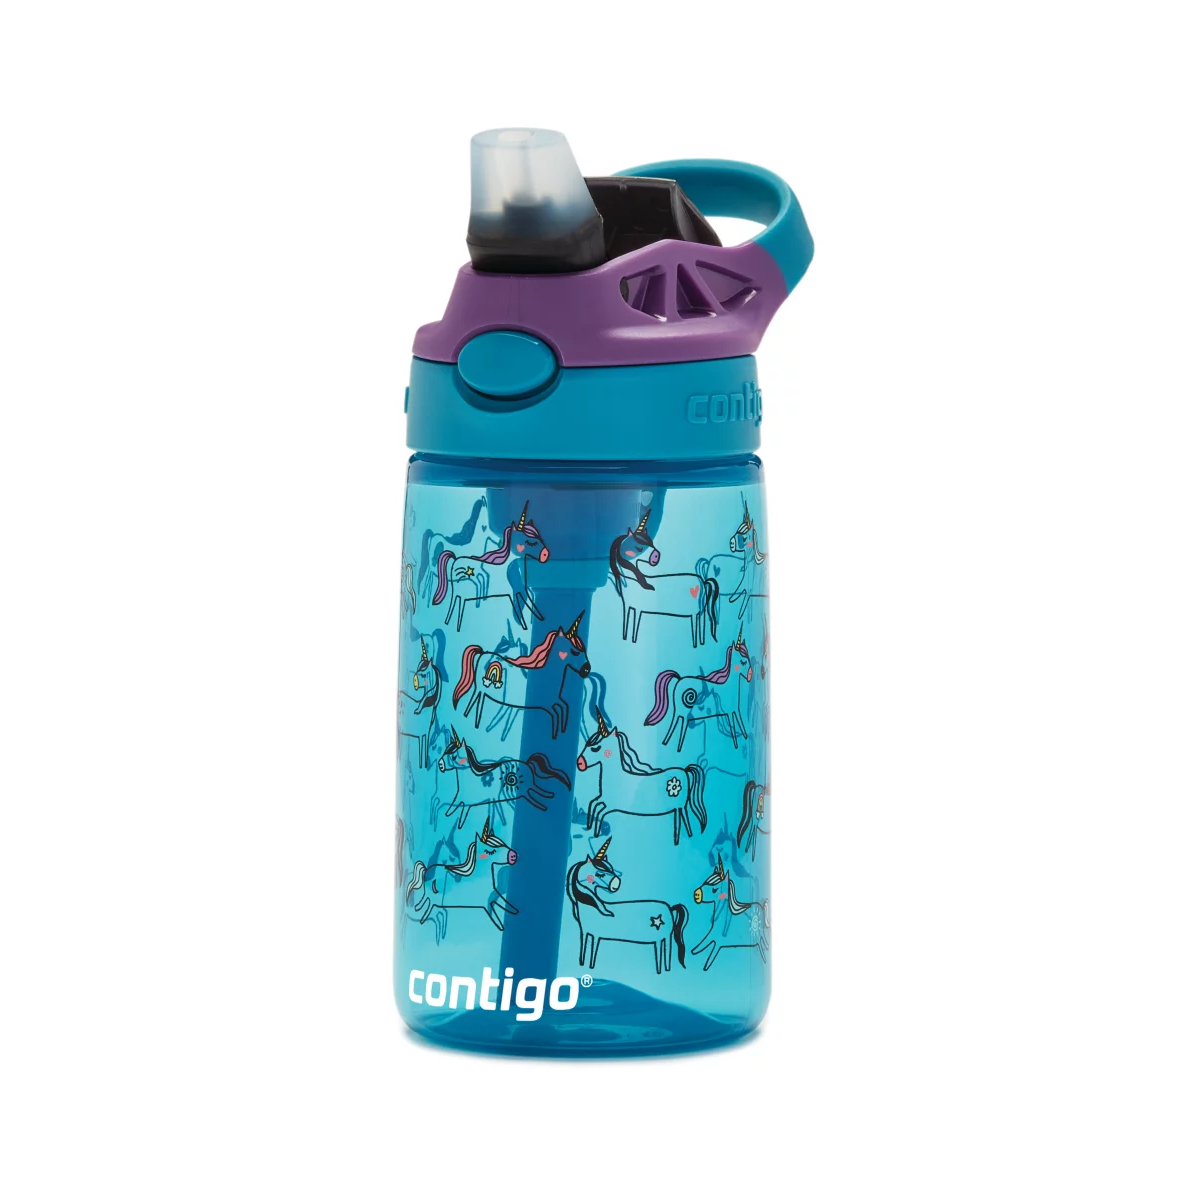 2 X 14 oz Contigo Kids Easy-Clean Lid Spill-Proof Water Bottles Autospout